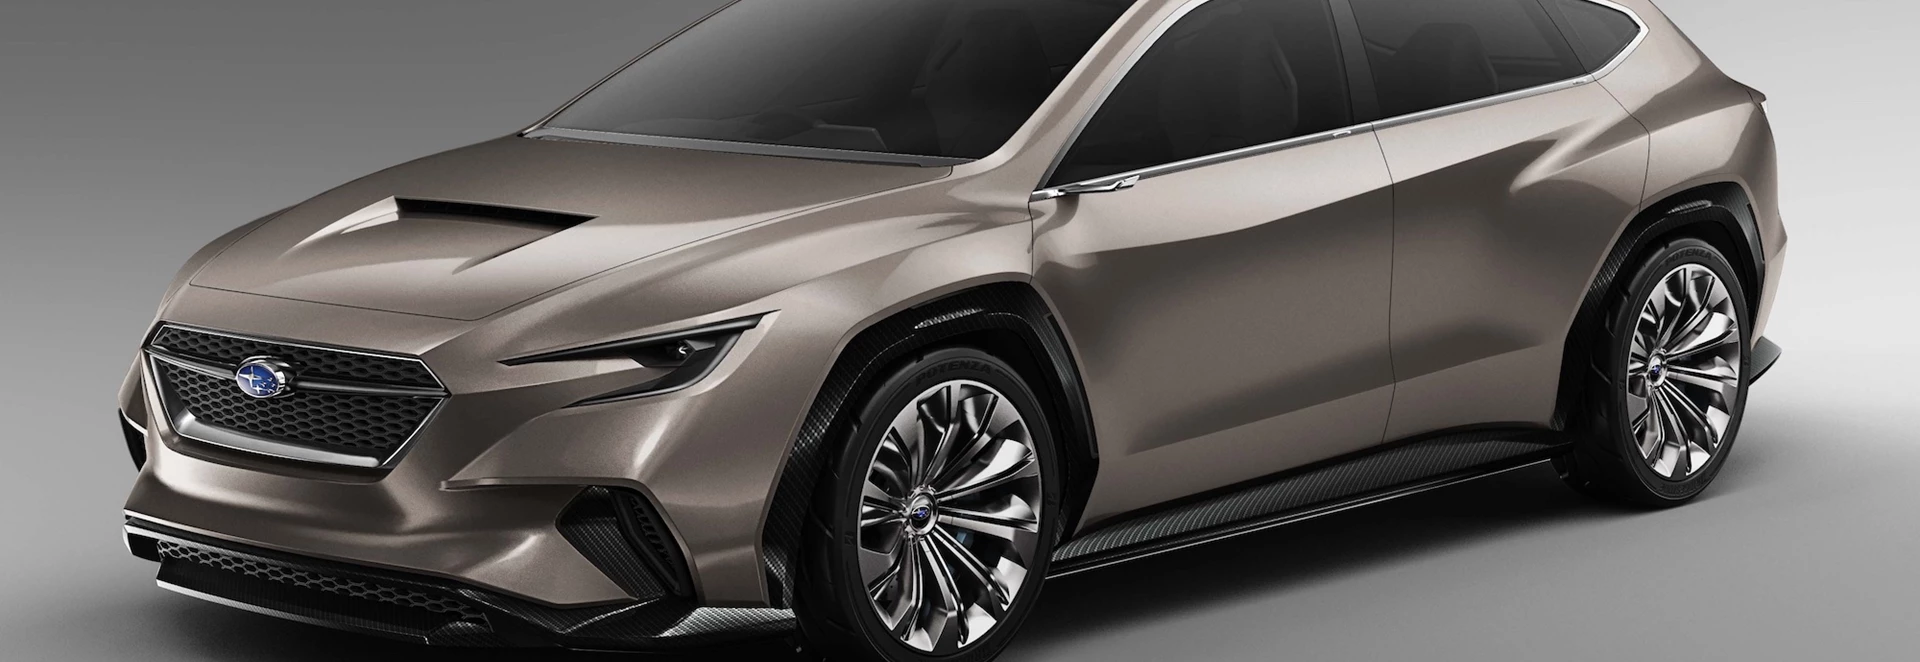 Subaru Viziv Tourer Concept revealed